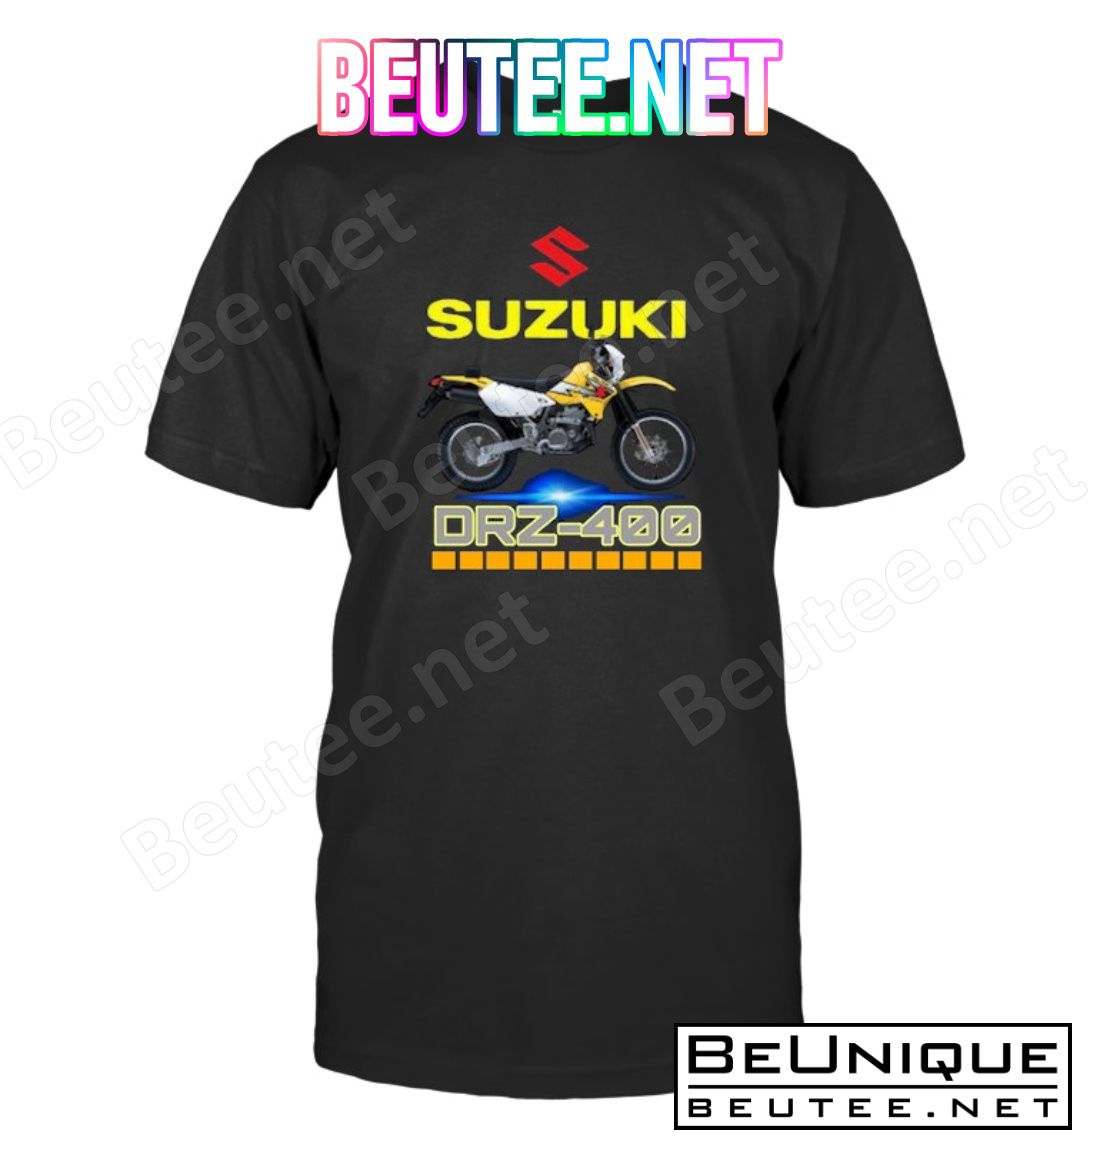 Suzuki Drz-400 Shirt